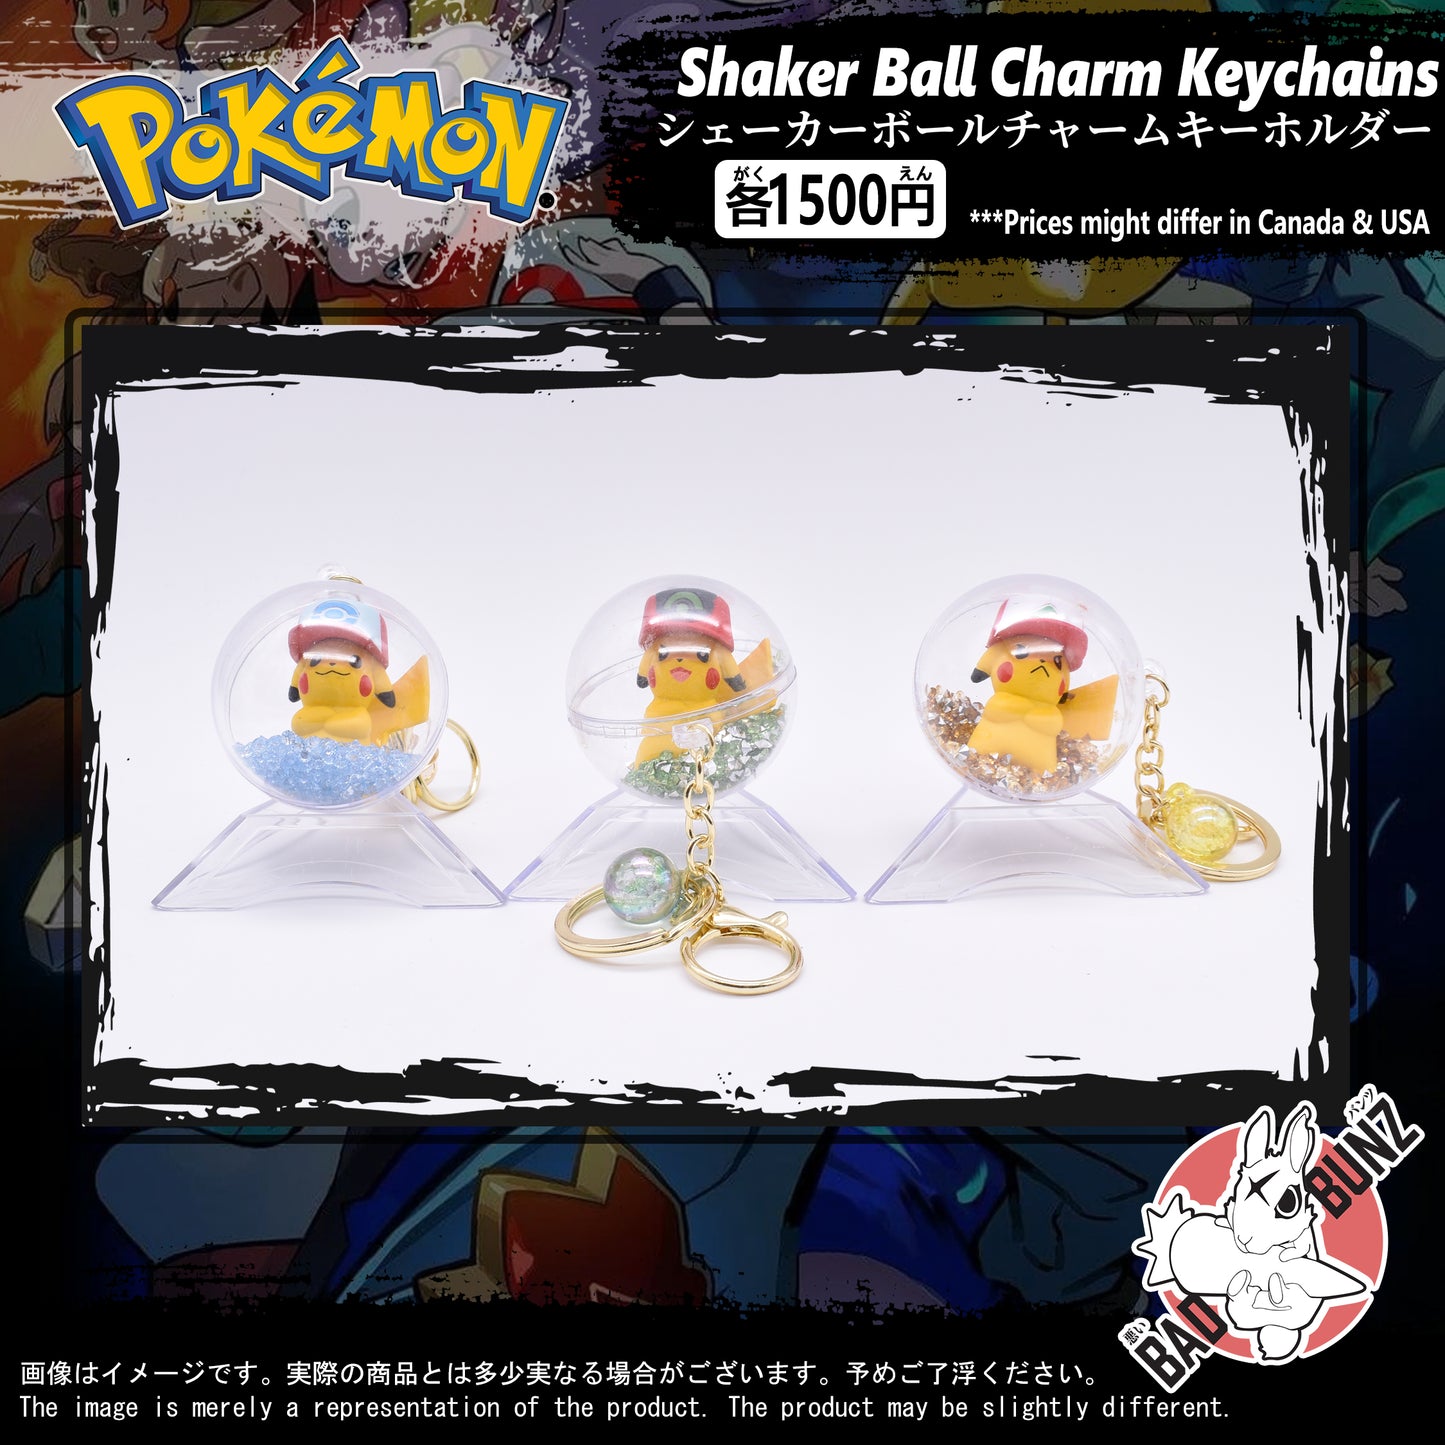 (PKM-02BALL) Pokemon Gaming Shaker Ball Charm Keychain (0, 0, 0)